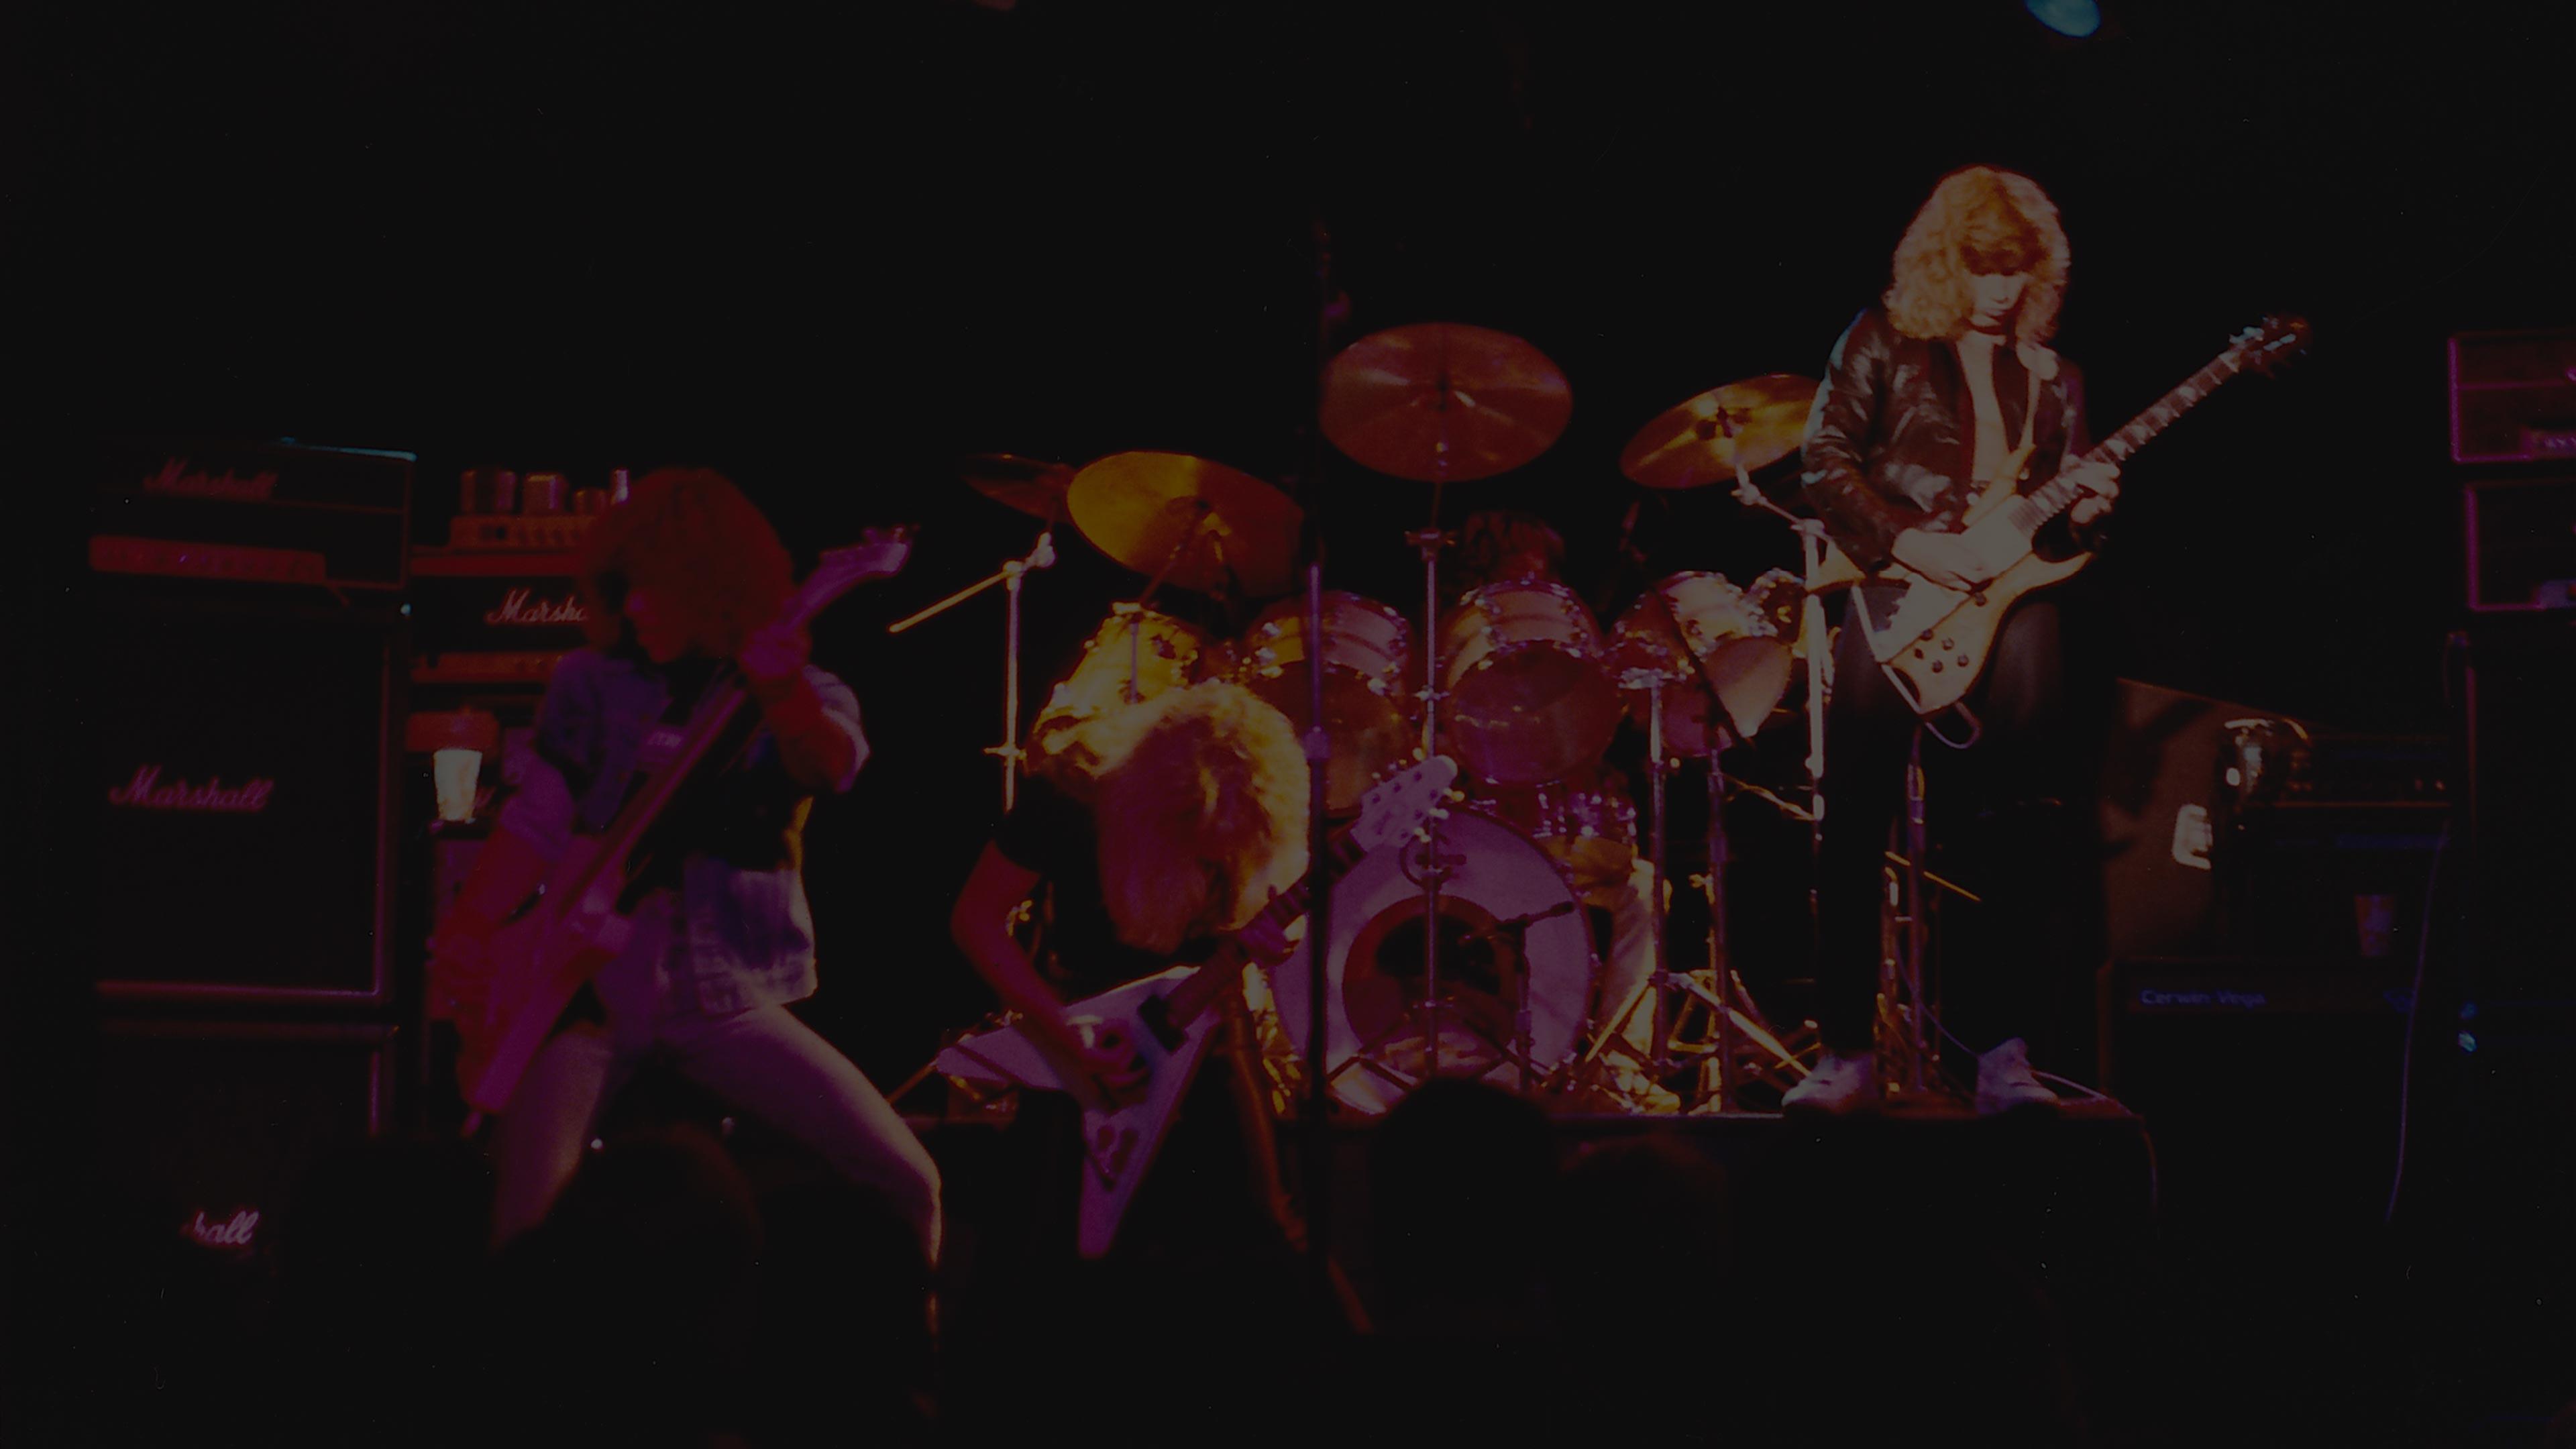 Metallica at Mabuhay Gardens in San Francisco, CA on November 30, 1982